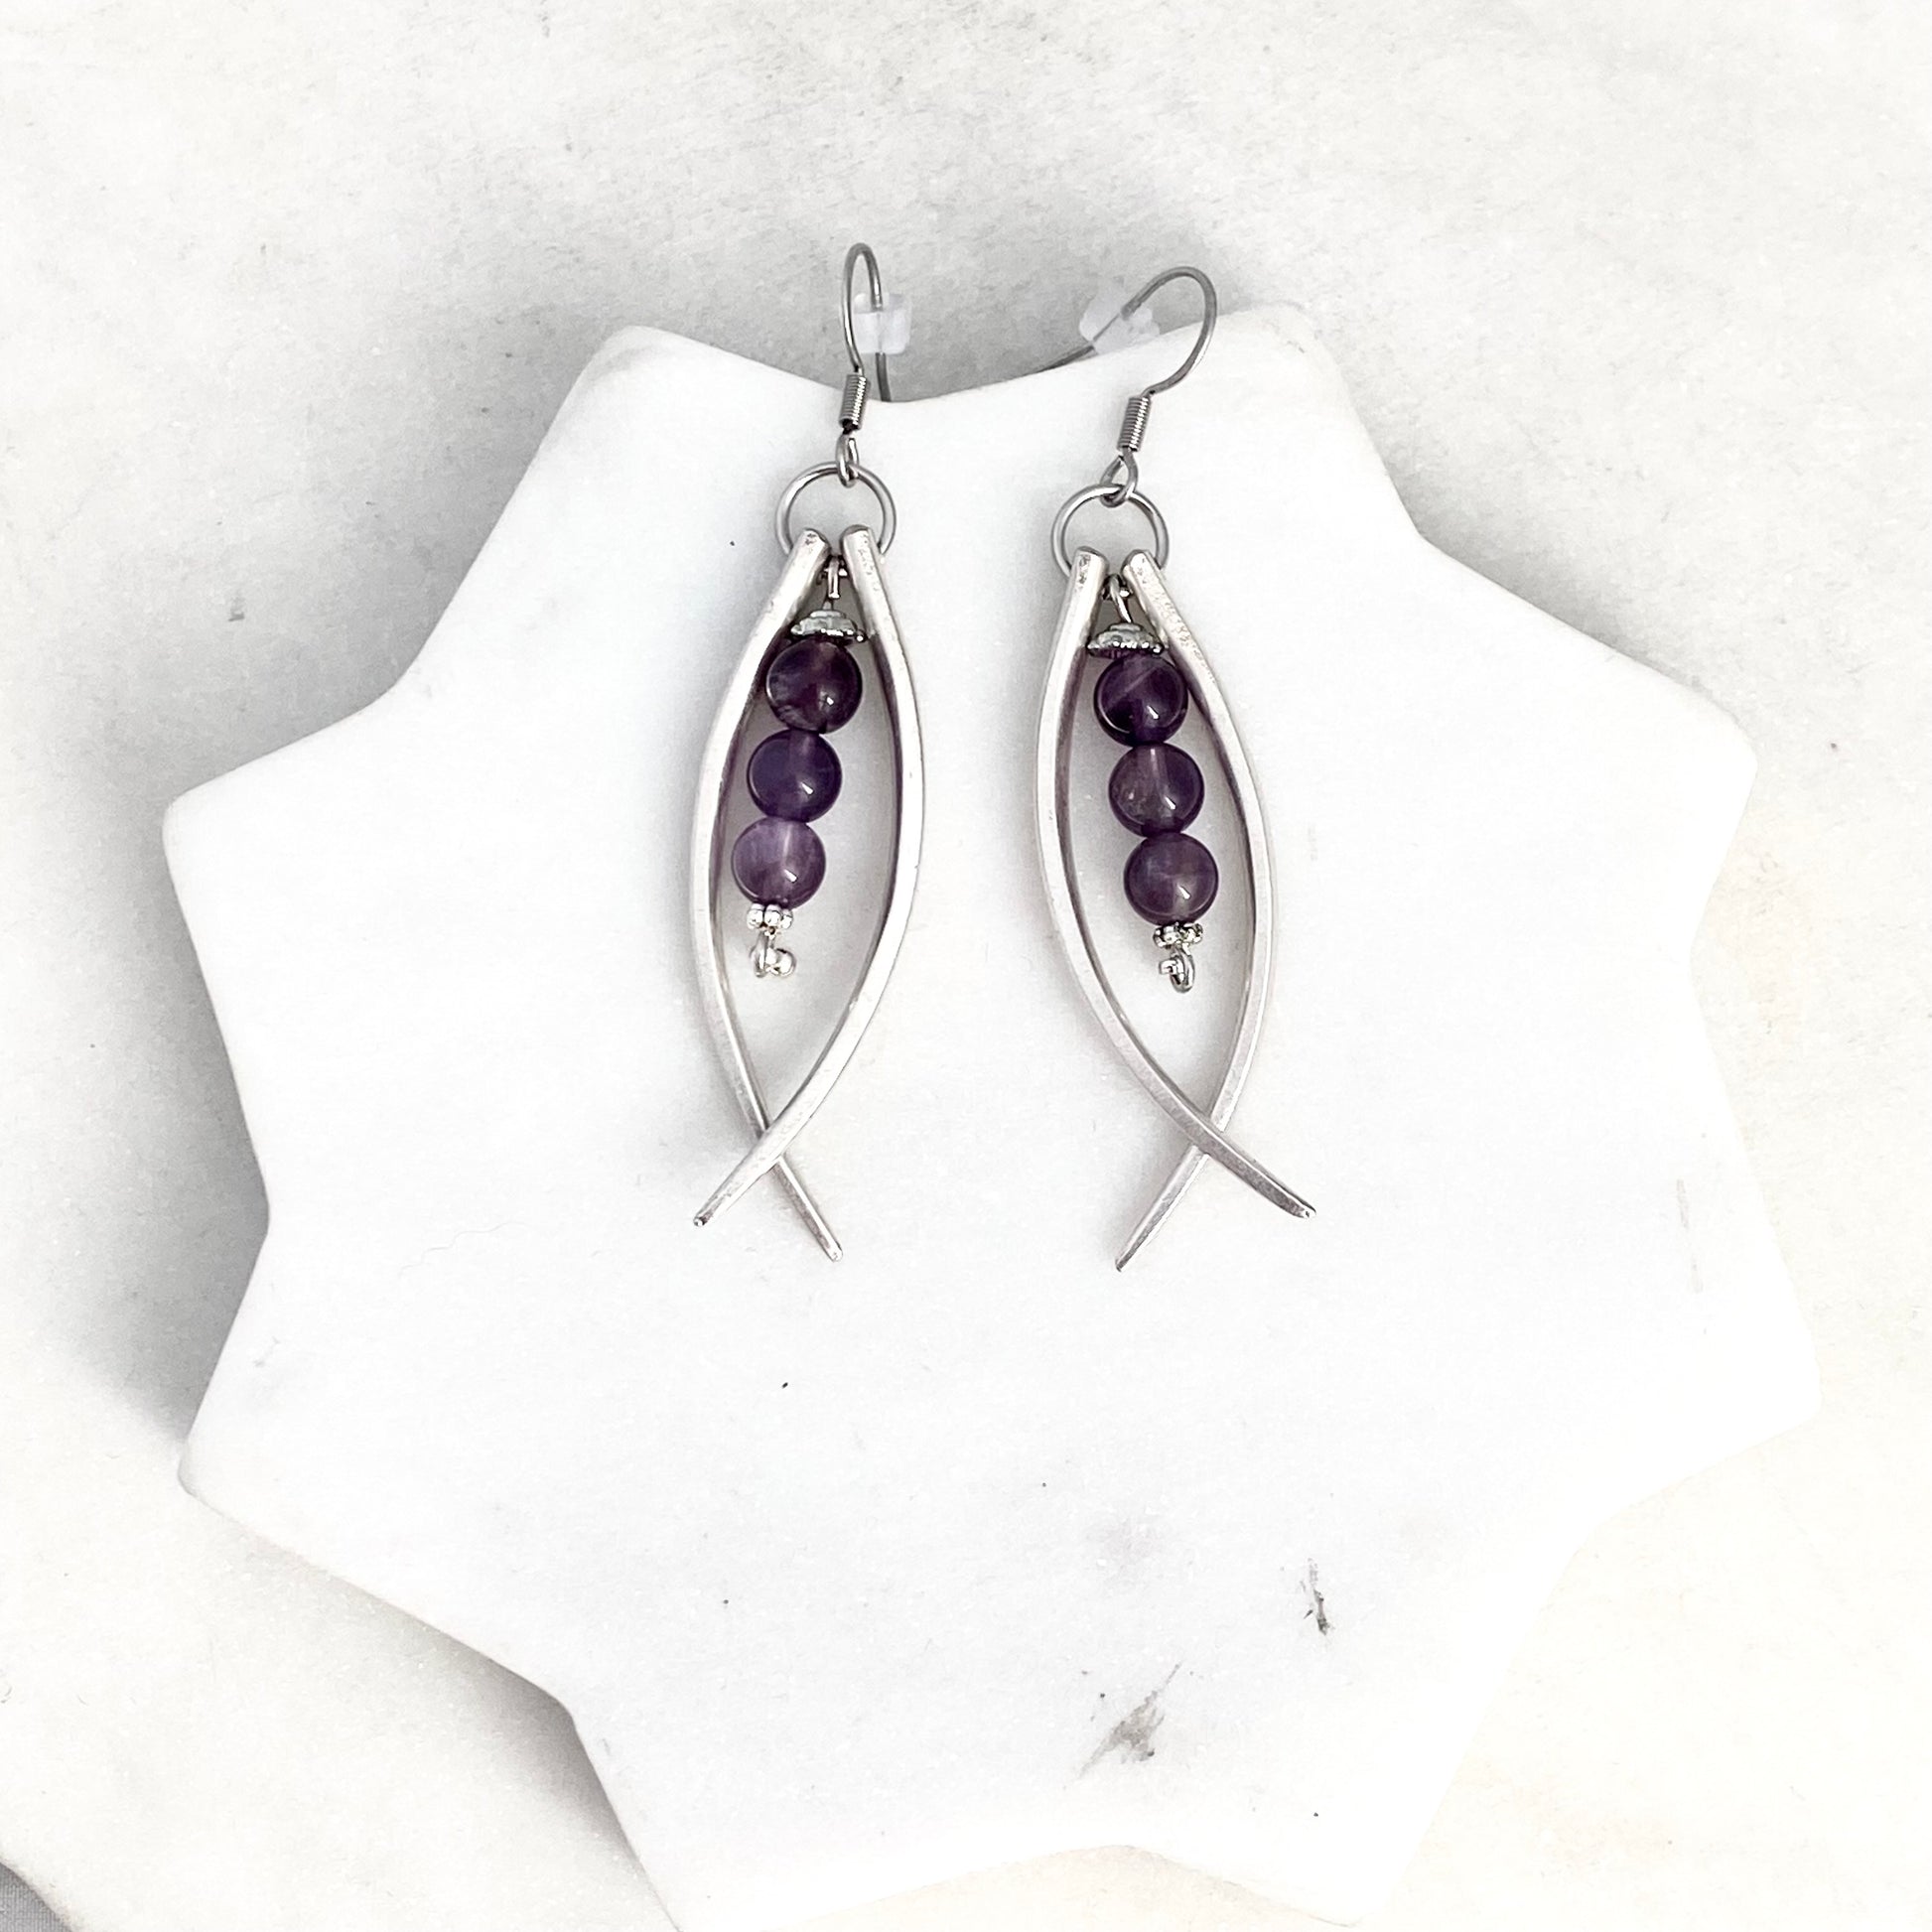 Double Fork Tine and Bead Drop Earrings (Amethyst), Reclaimed Silverware Earrings, Vintage Fork Jewelry Earrings callistafaye   